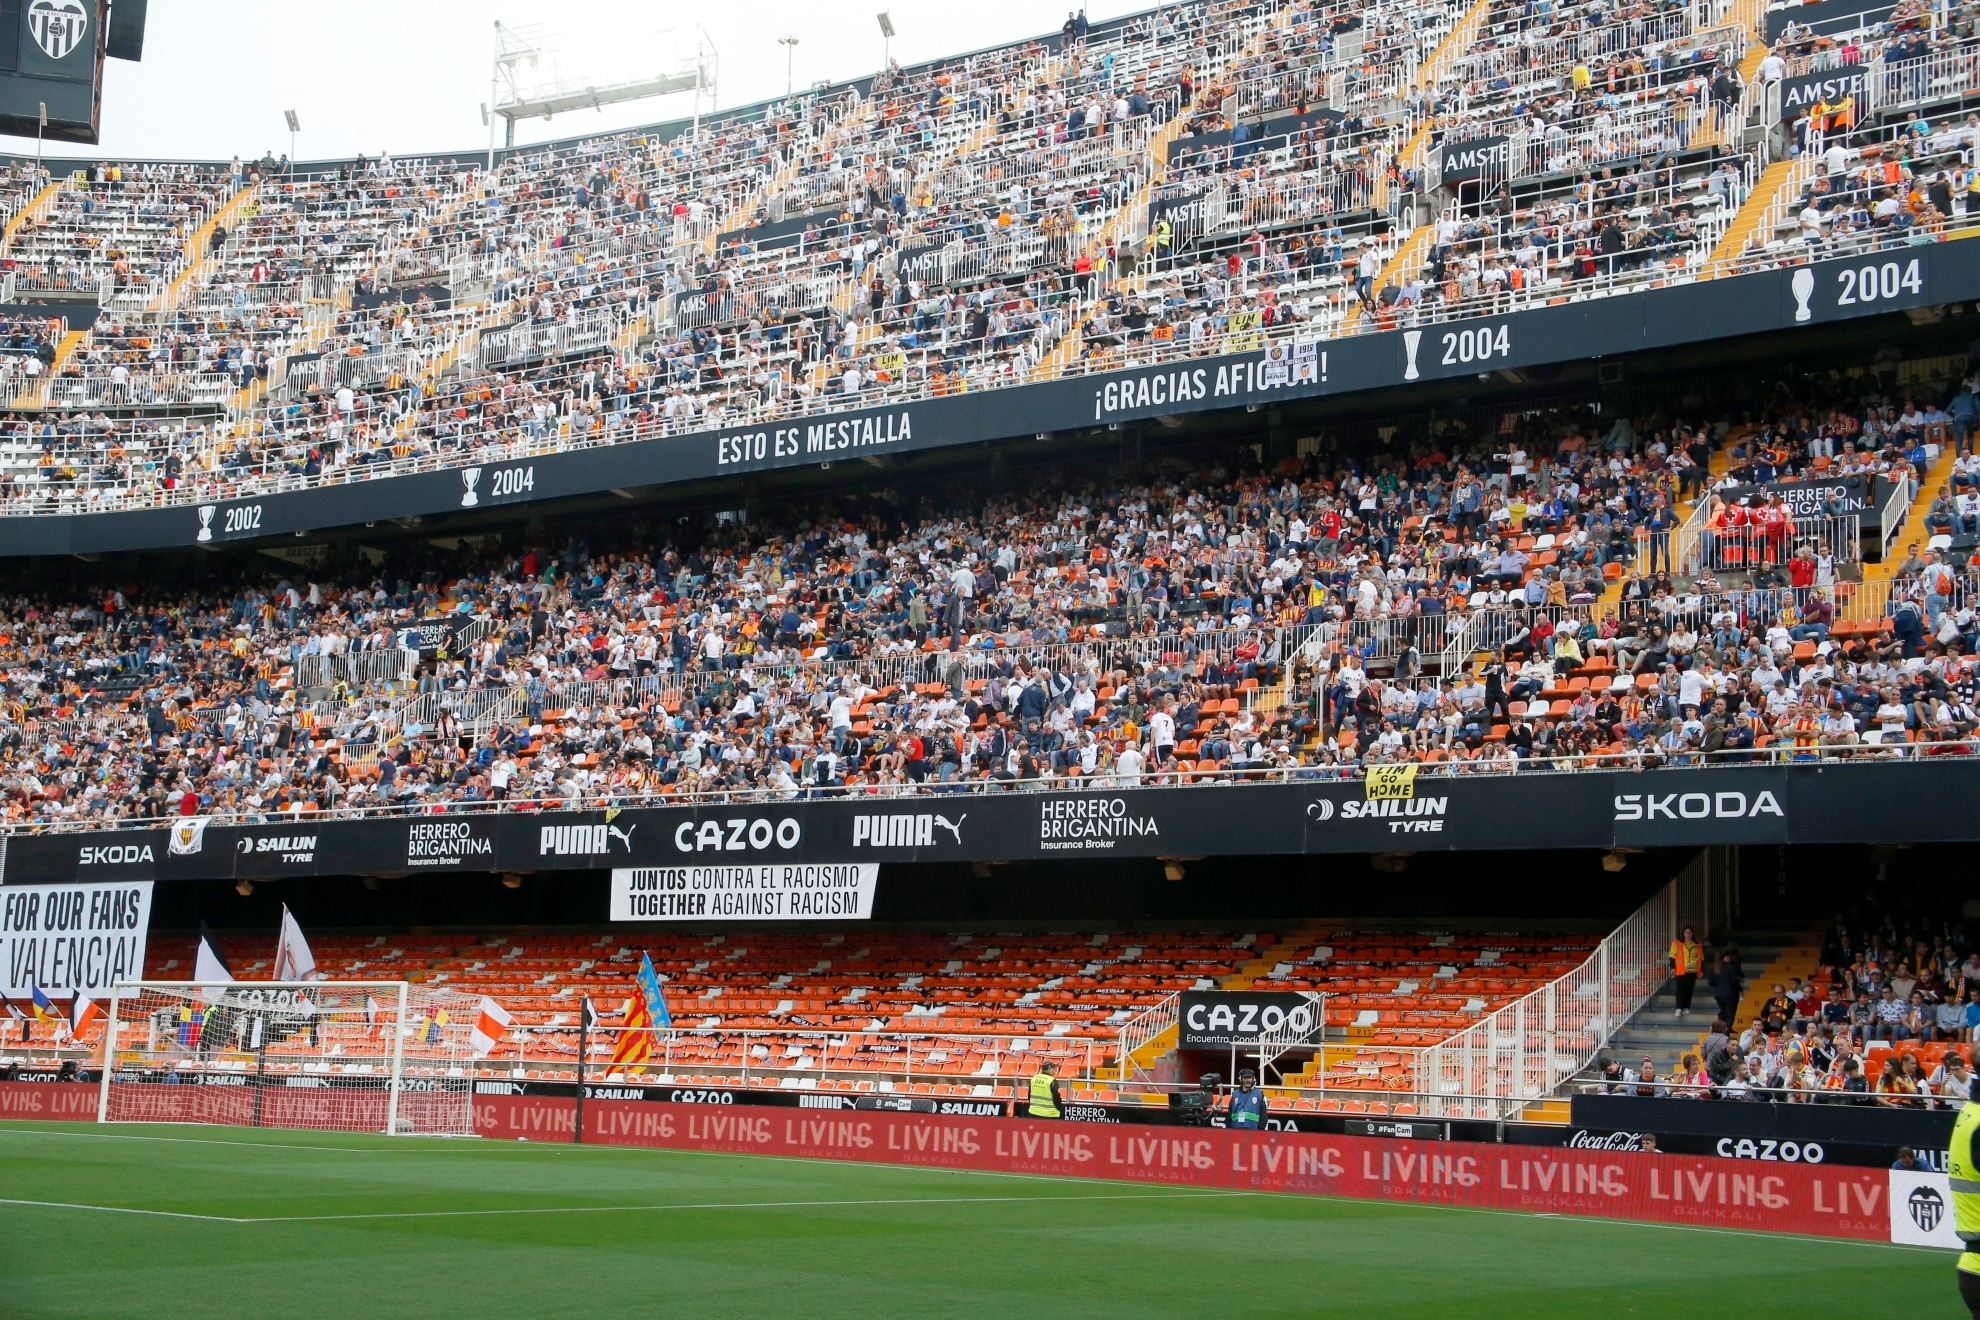 Fondo sur de Mestalla con la grada de animación vacía durante un partido.